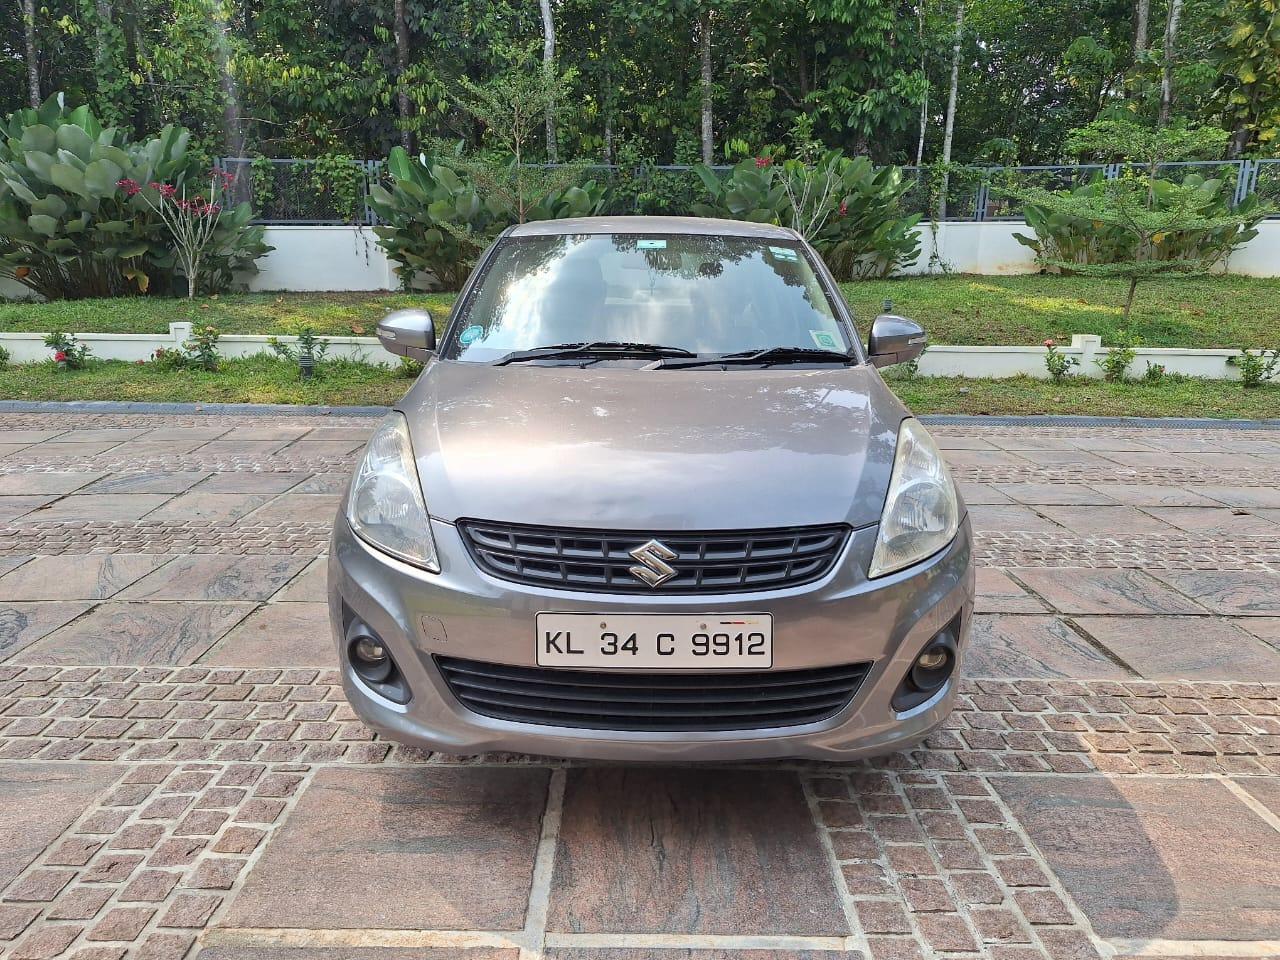 Used 2014 Maruti Suzuki Swift DZire, Mariappally, Kottayam